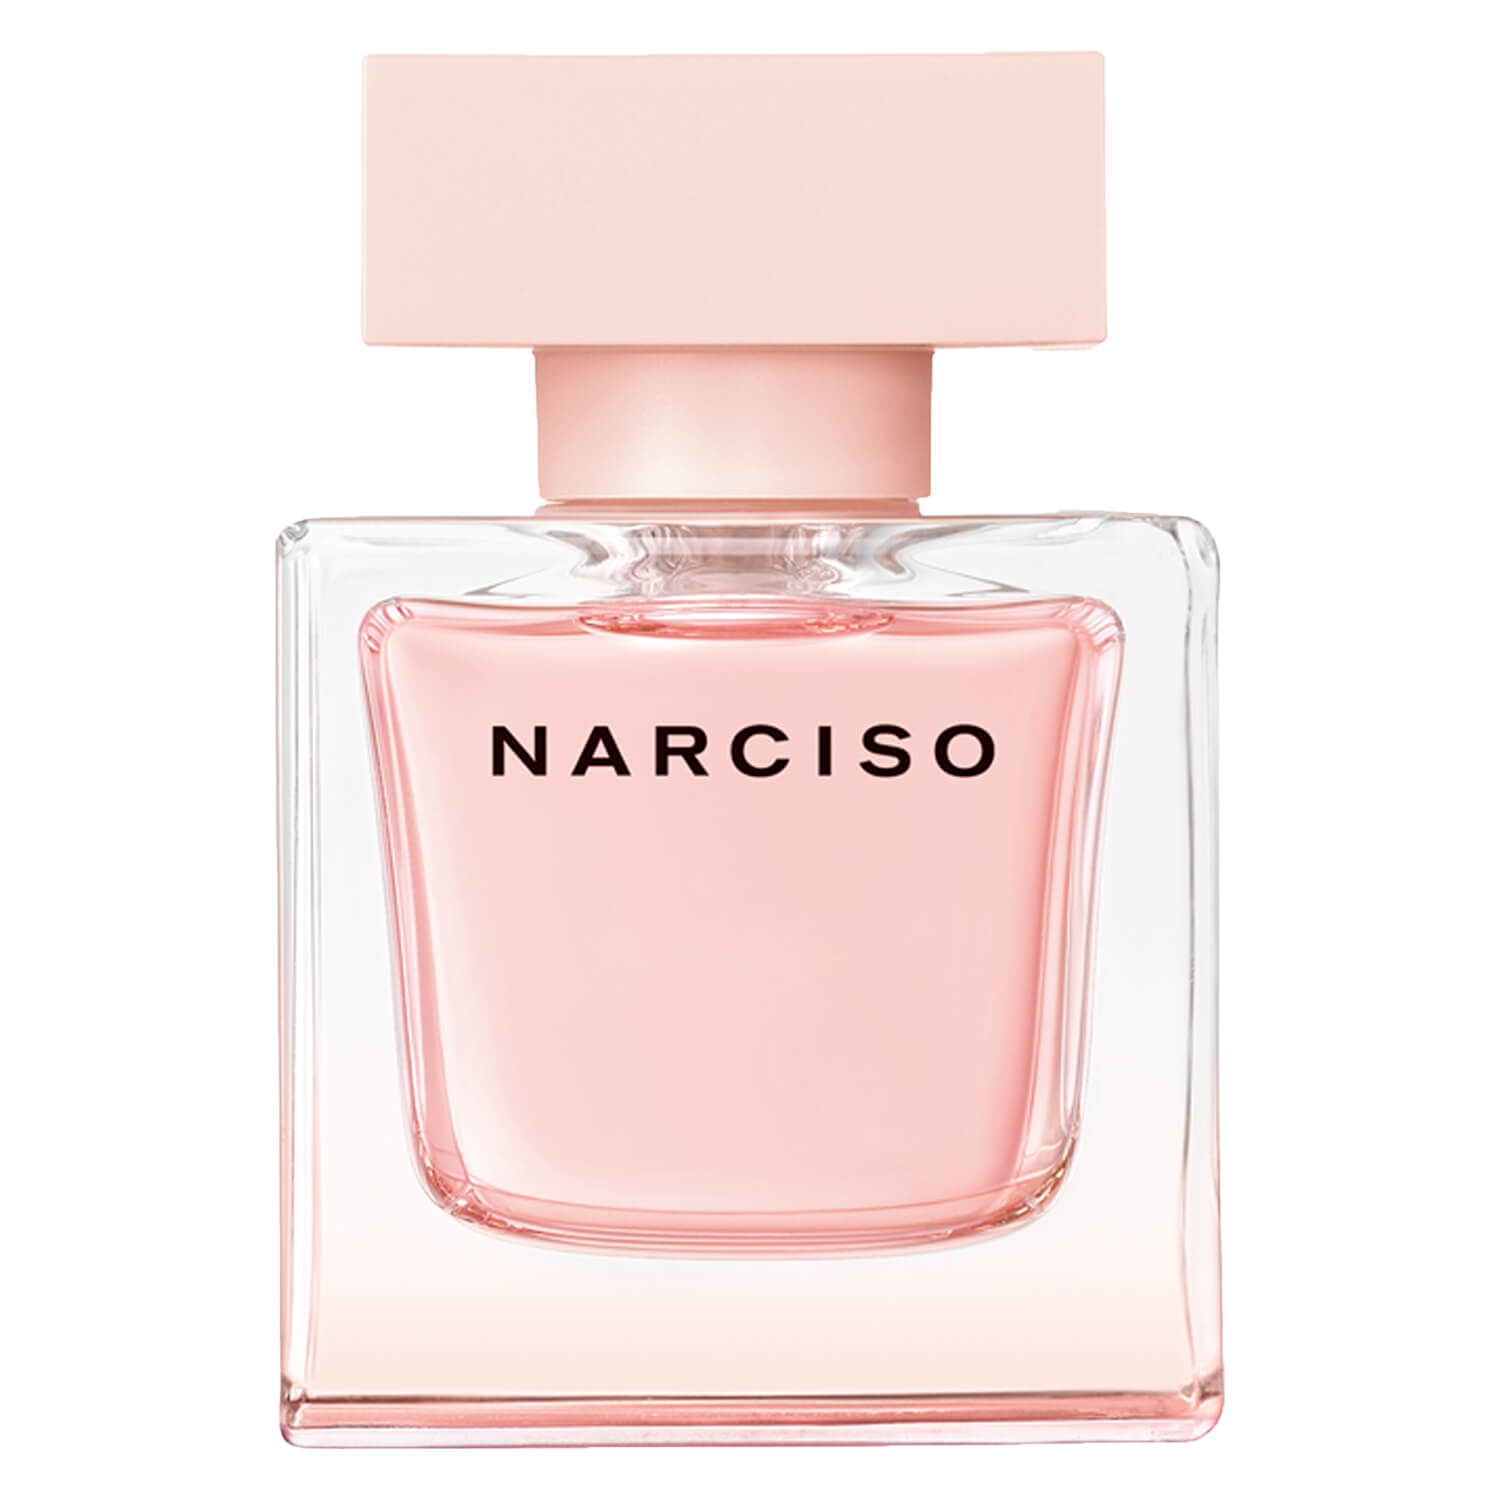 Produktbild von Narciso – Eau de Parfum Cristal